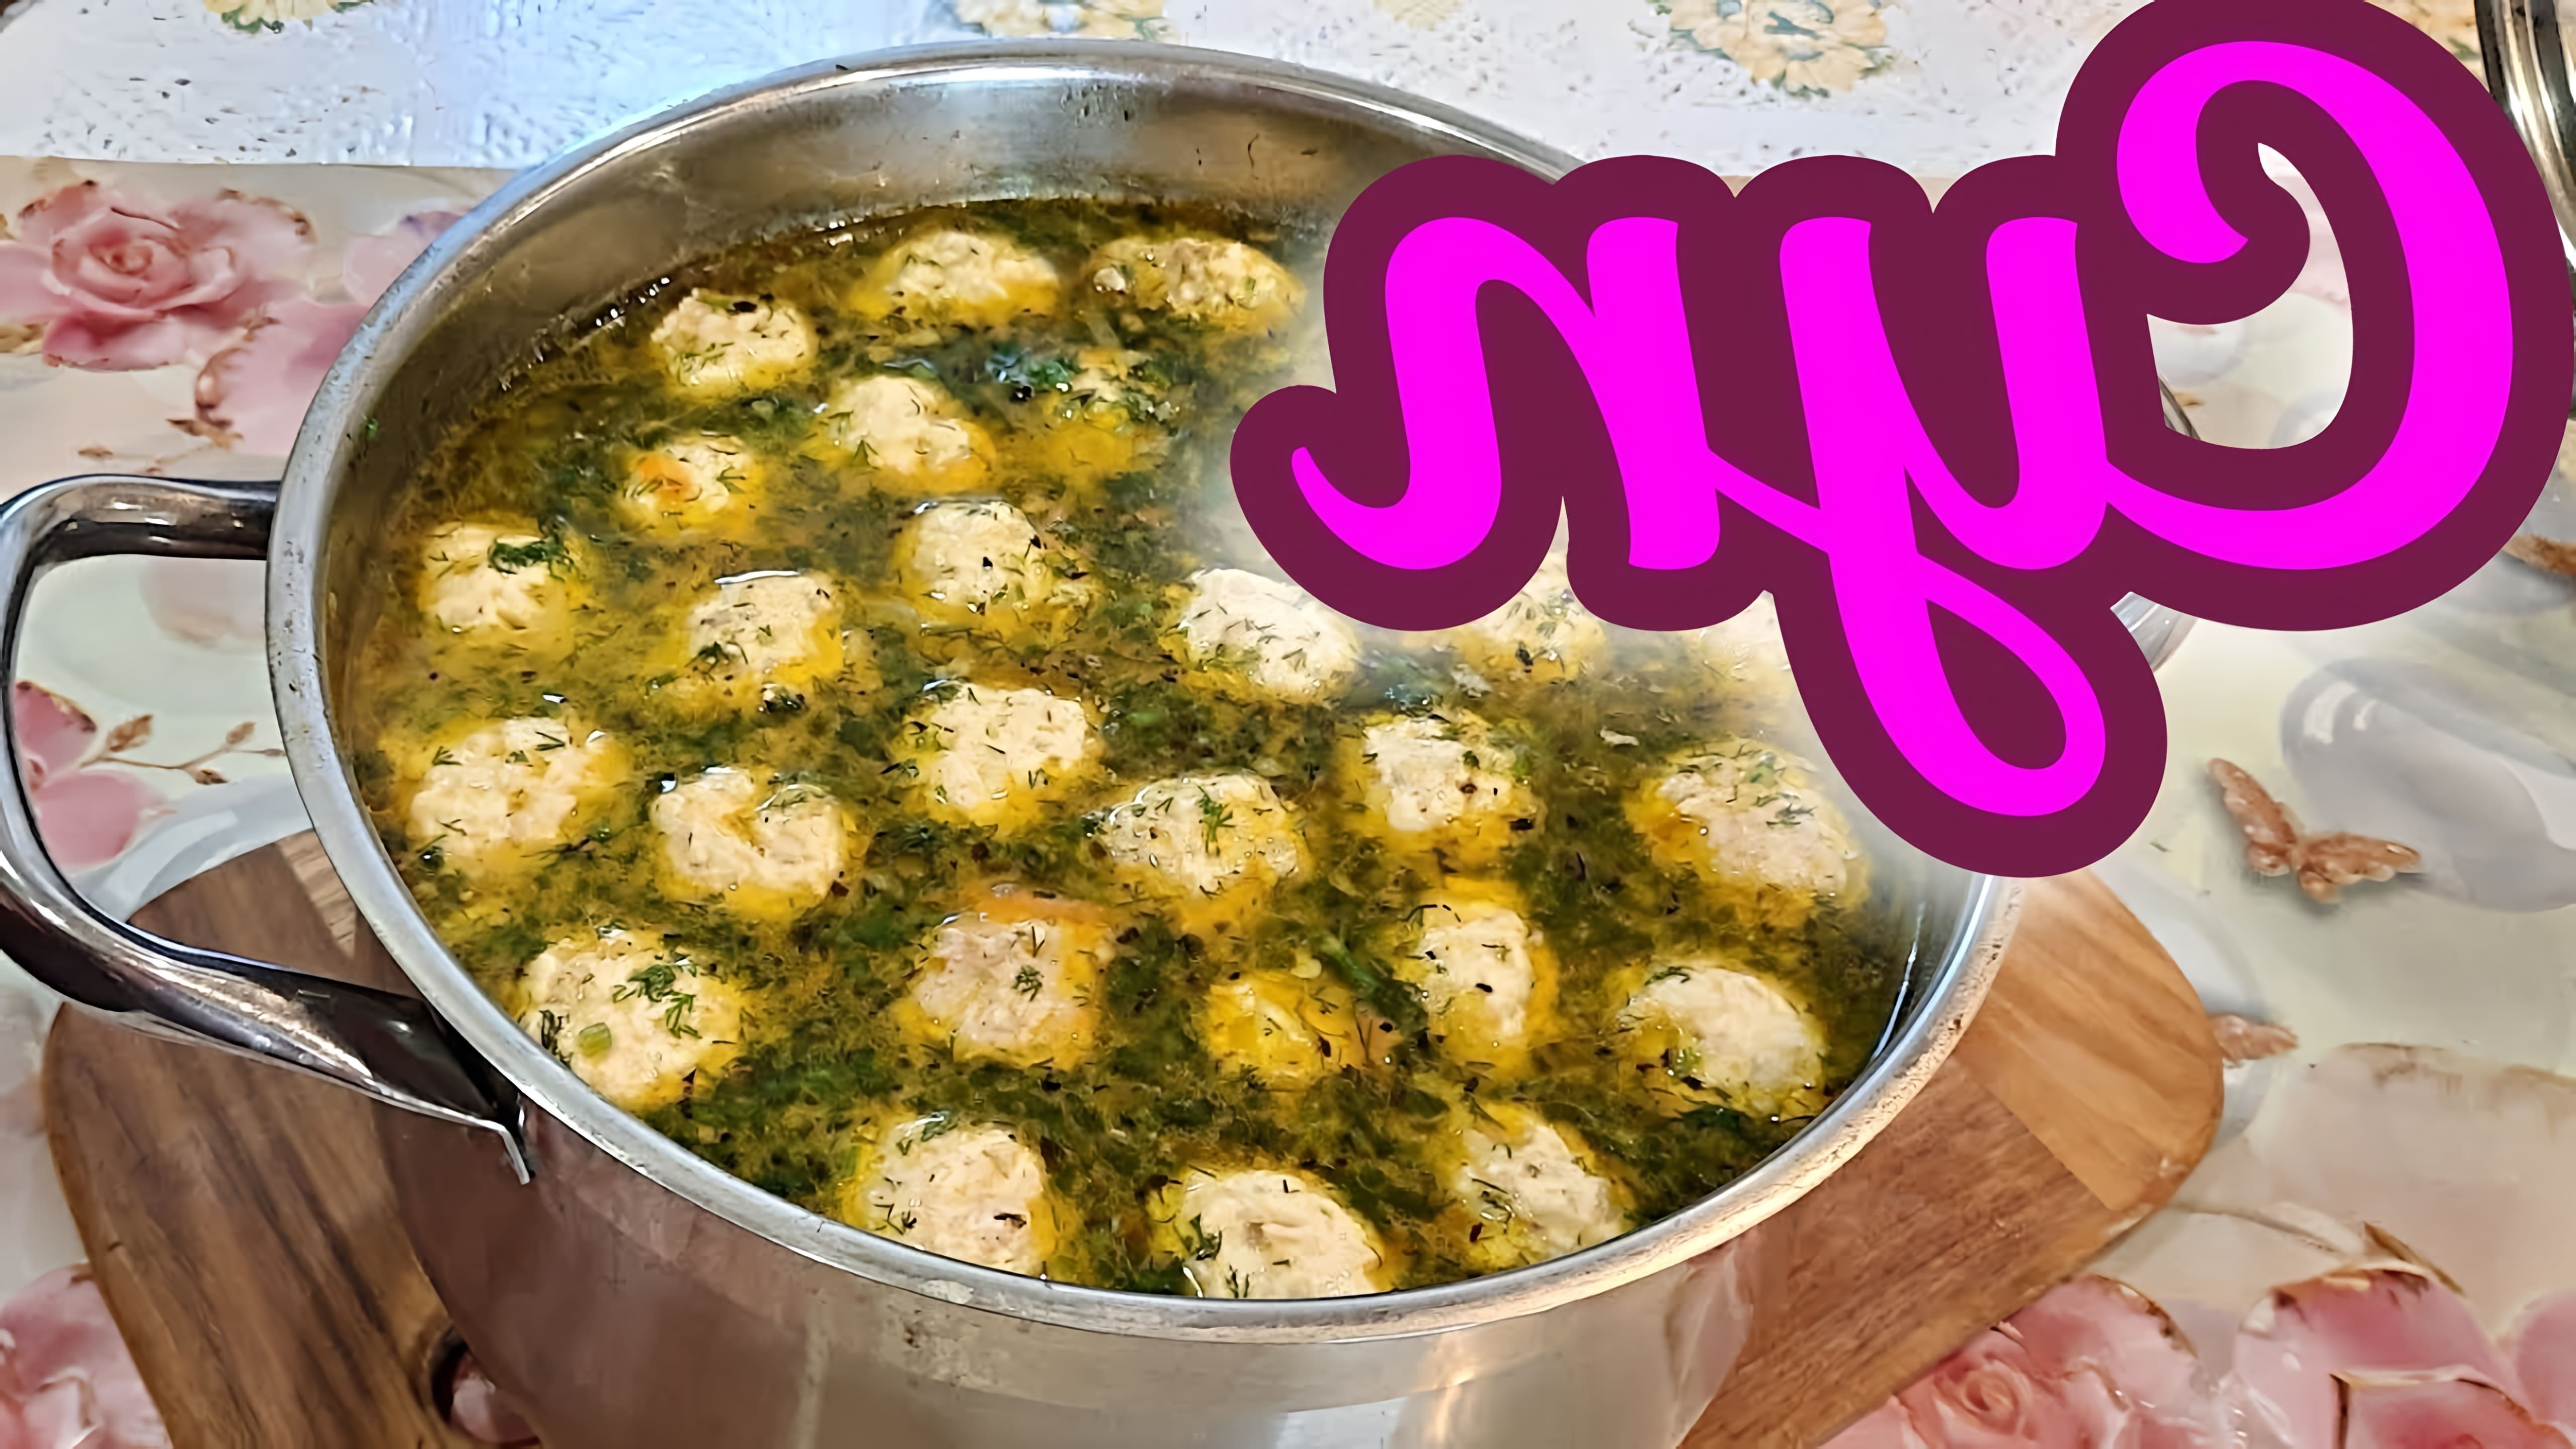 В этом видео демонстрируется рецепт приготовления вкусного супа с фрикадельками